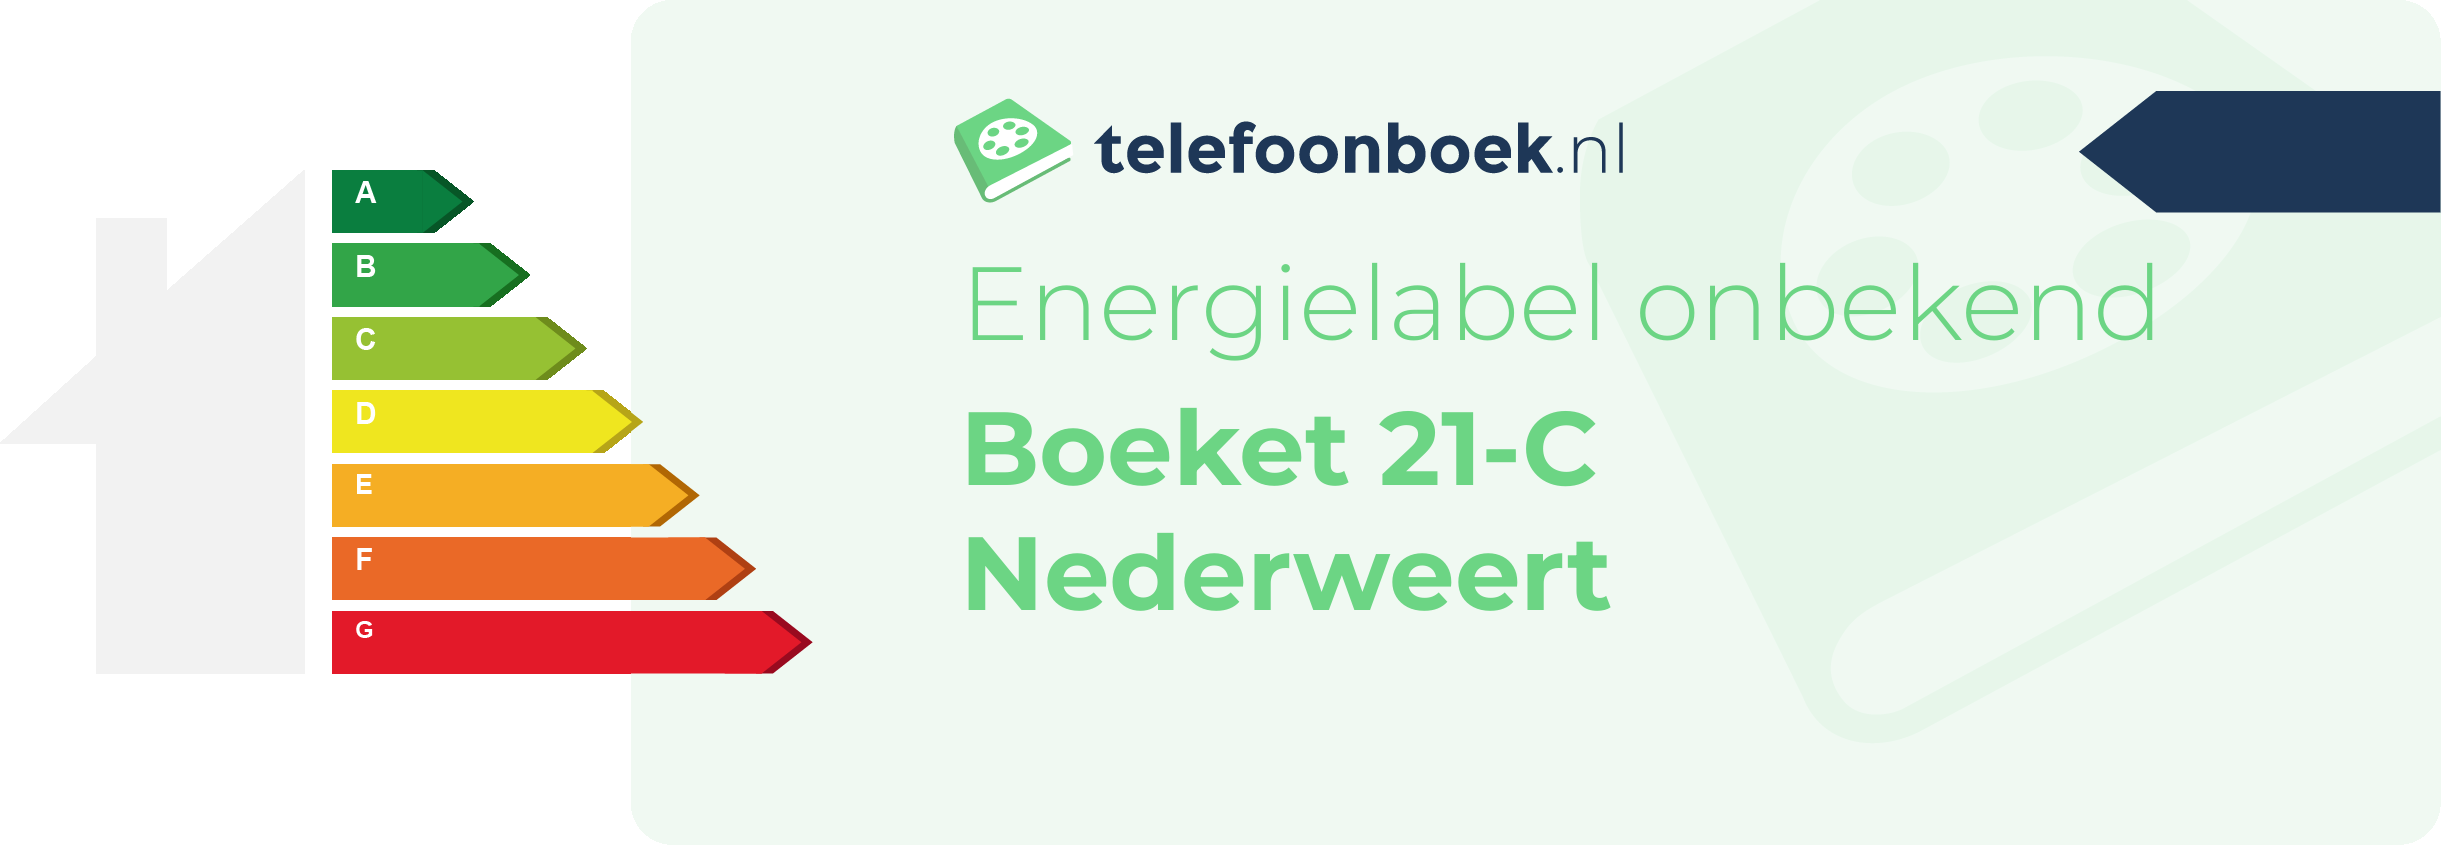 Energielabel Boeket 21-C Nederweert